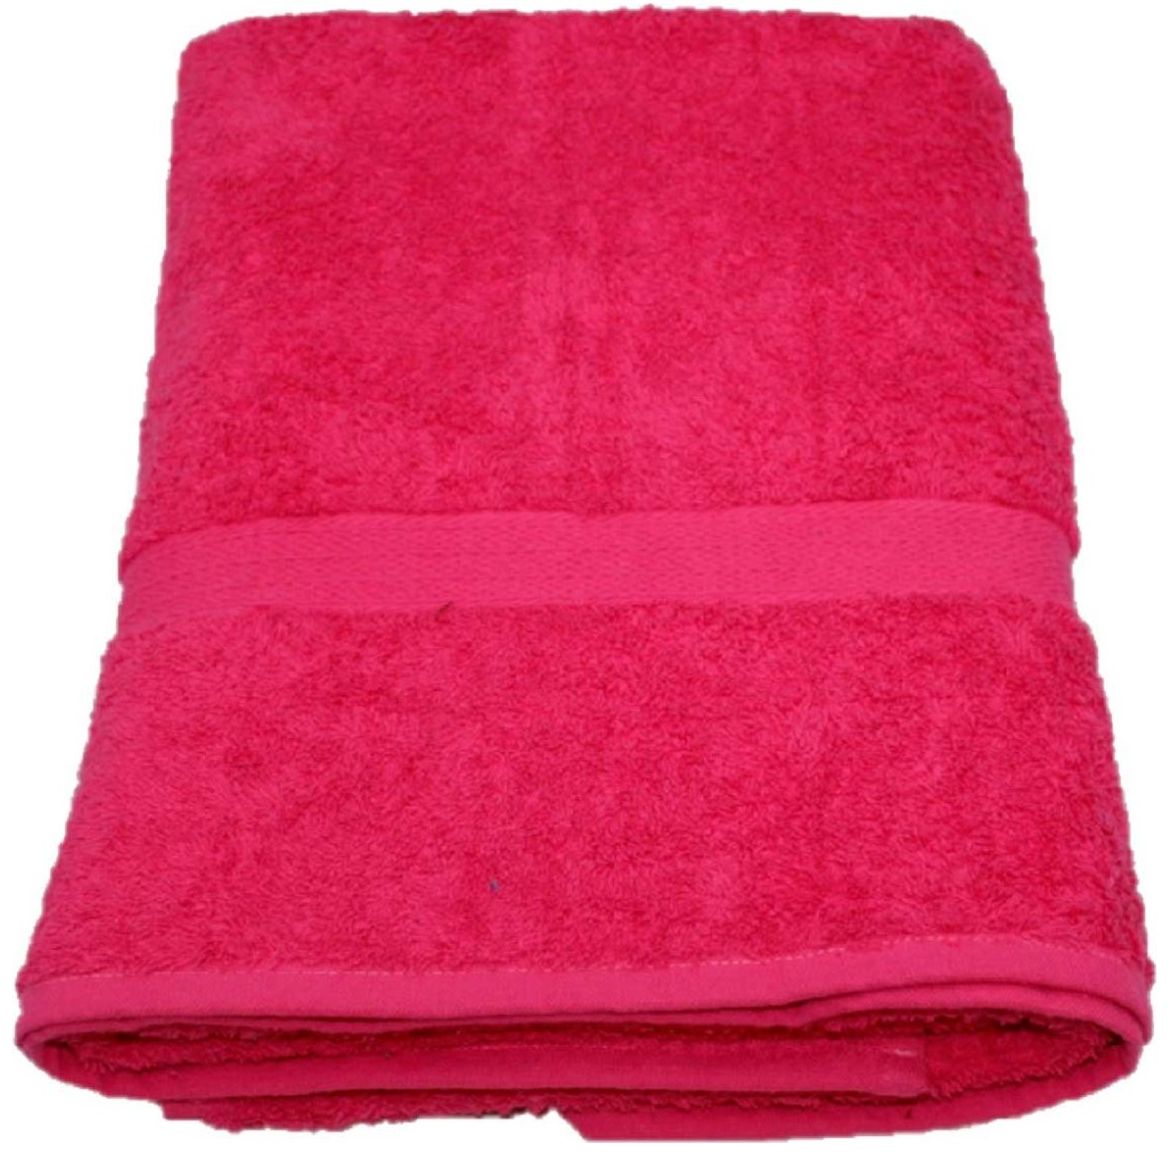  WFS Toallas de ducha, toallas de baño, toallas de baño  resistentes a la decoloración, toallas de algodón suave de secado rápido,  para deportes, playa, baño (paquete de 2) toallas de baño (